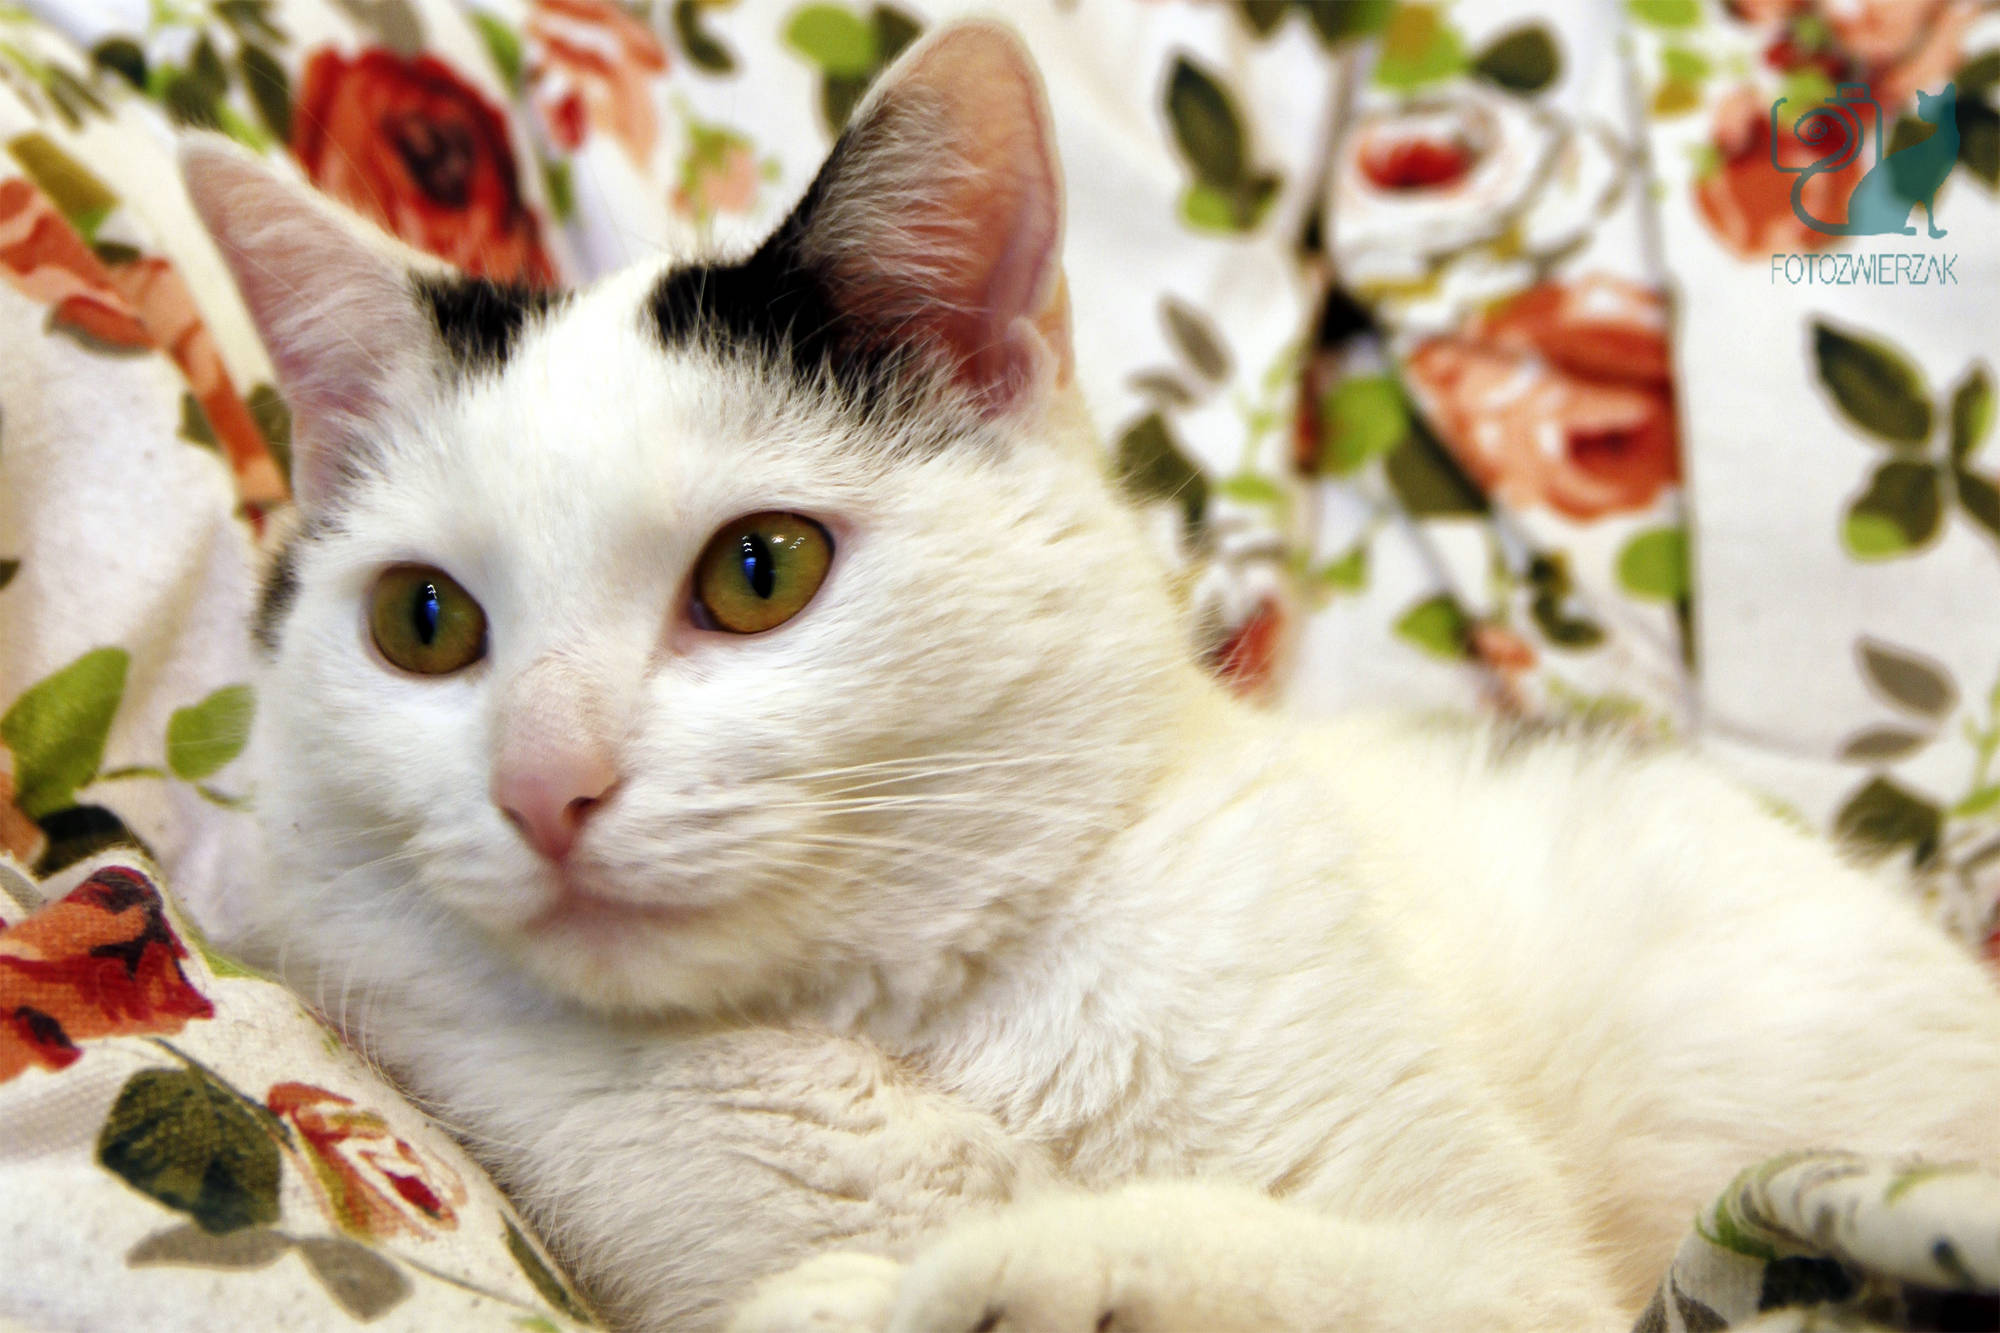 zrelaksowany biały kot, śieszny kot, śmieszne koty, spoko kot, piękny kot, mały kotek, kocia modelka, kot władca świata, luz, wyluzowany kot